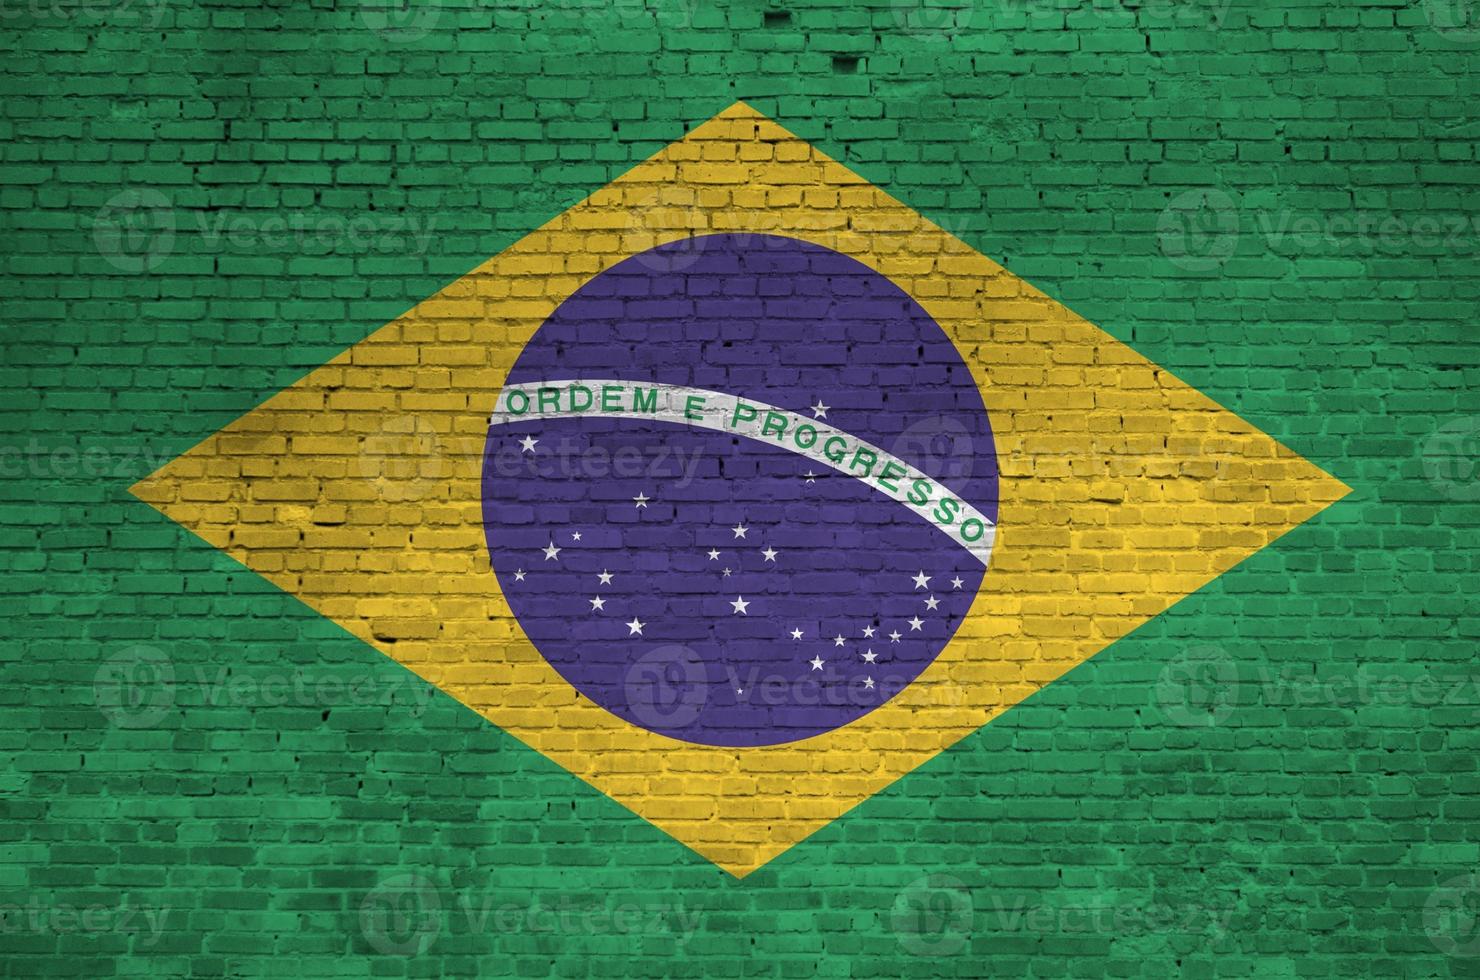 Brasilien flagga avbildad i måla färger på gammal tegel vägg. texturerad baner på stor tegel vägg murverk bakgrund foto